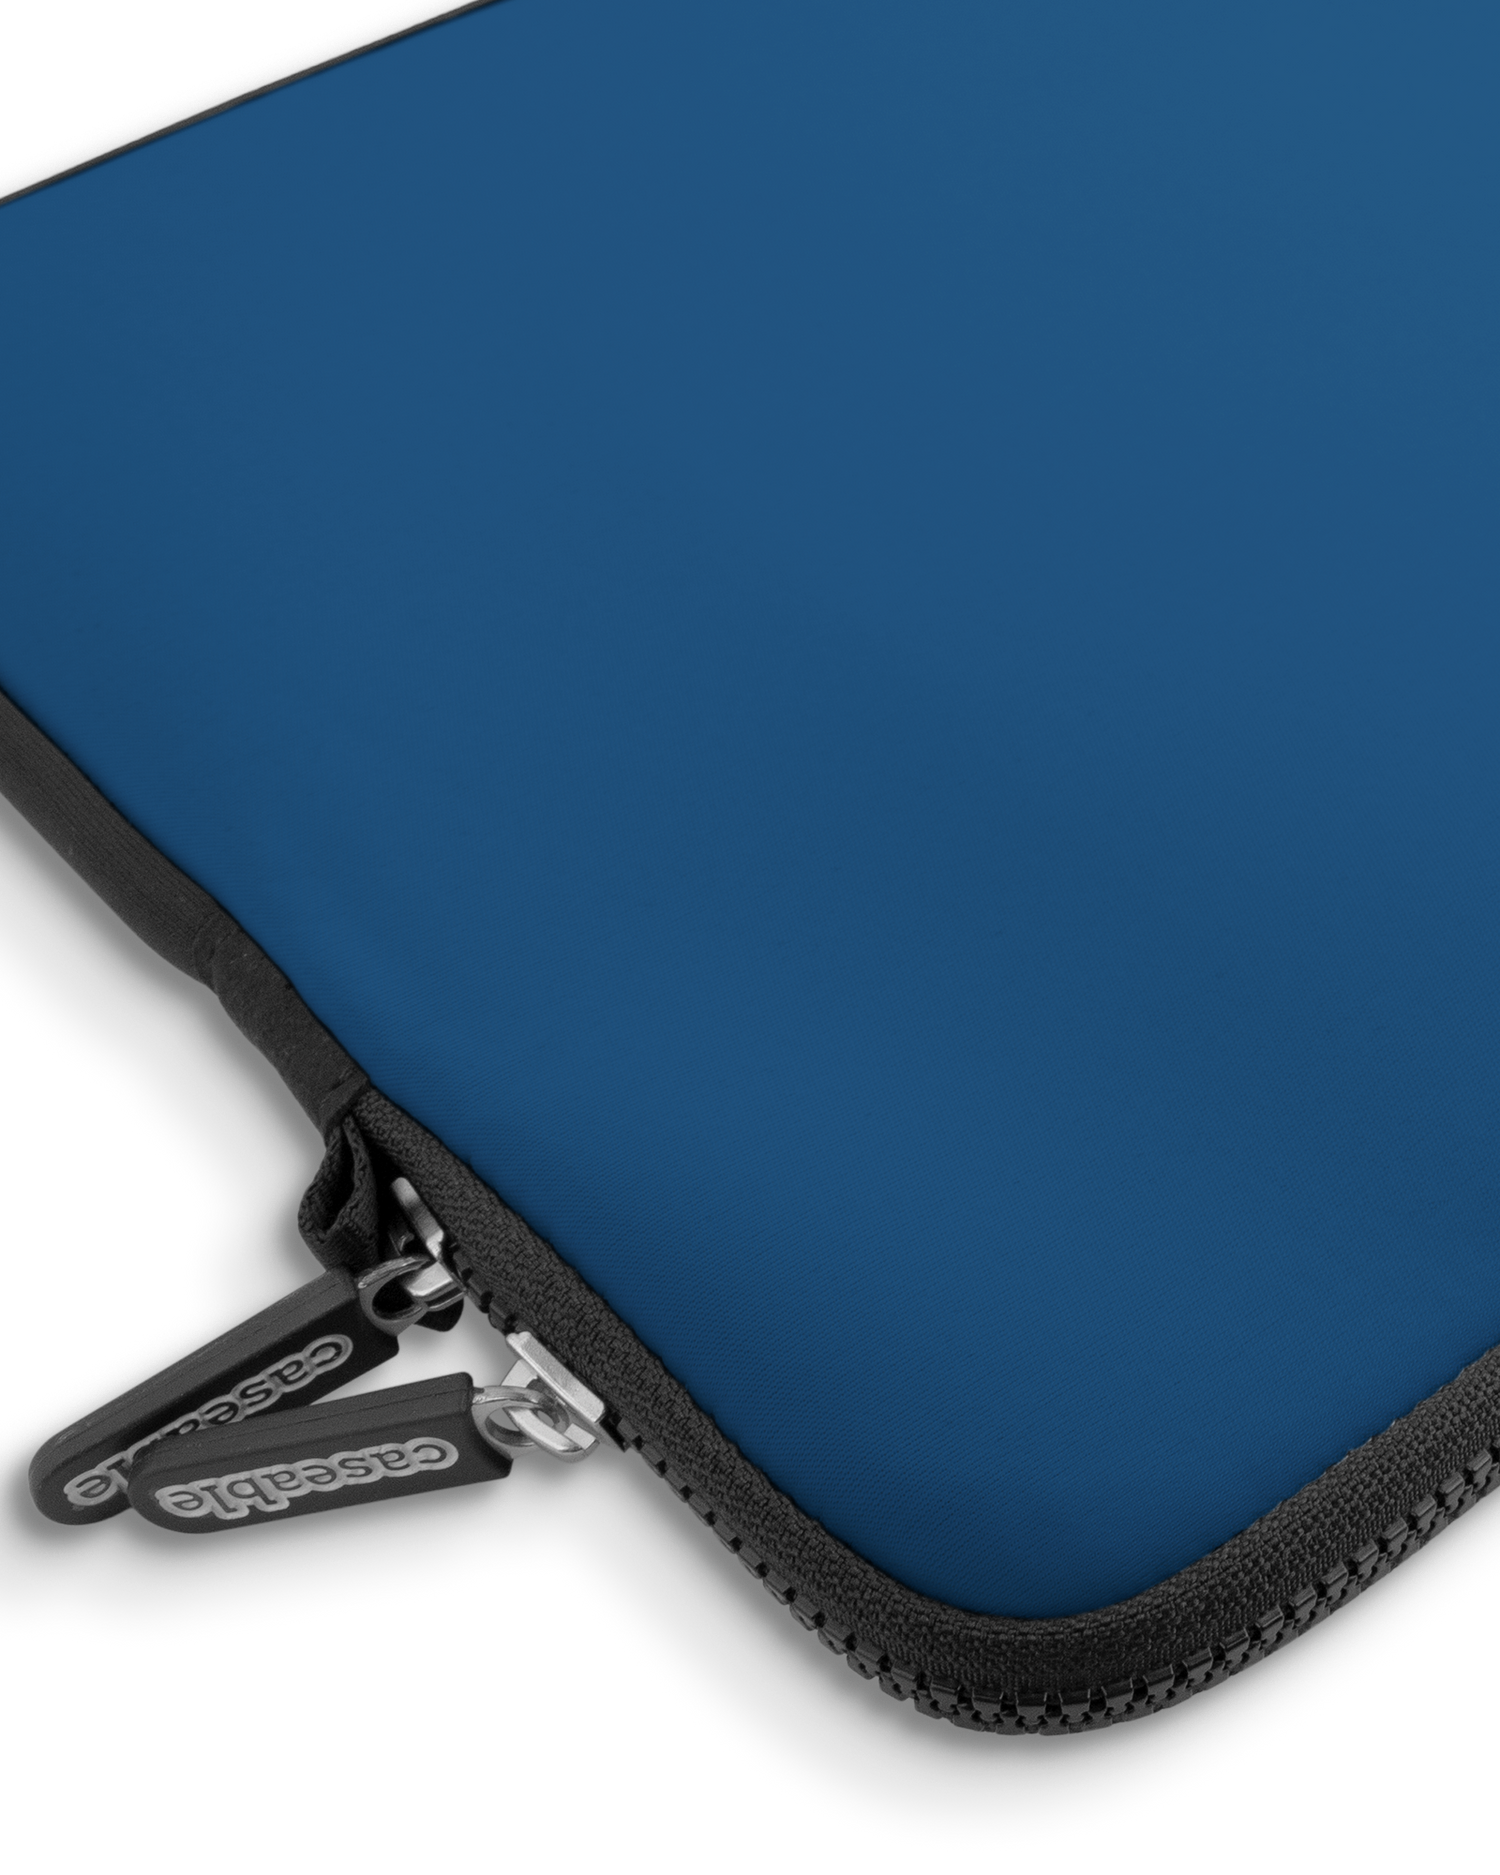 CLASSIC BLUE Premium Laptoptasche 15 Zoll mit Gerät im Inneren